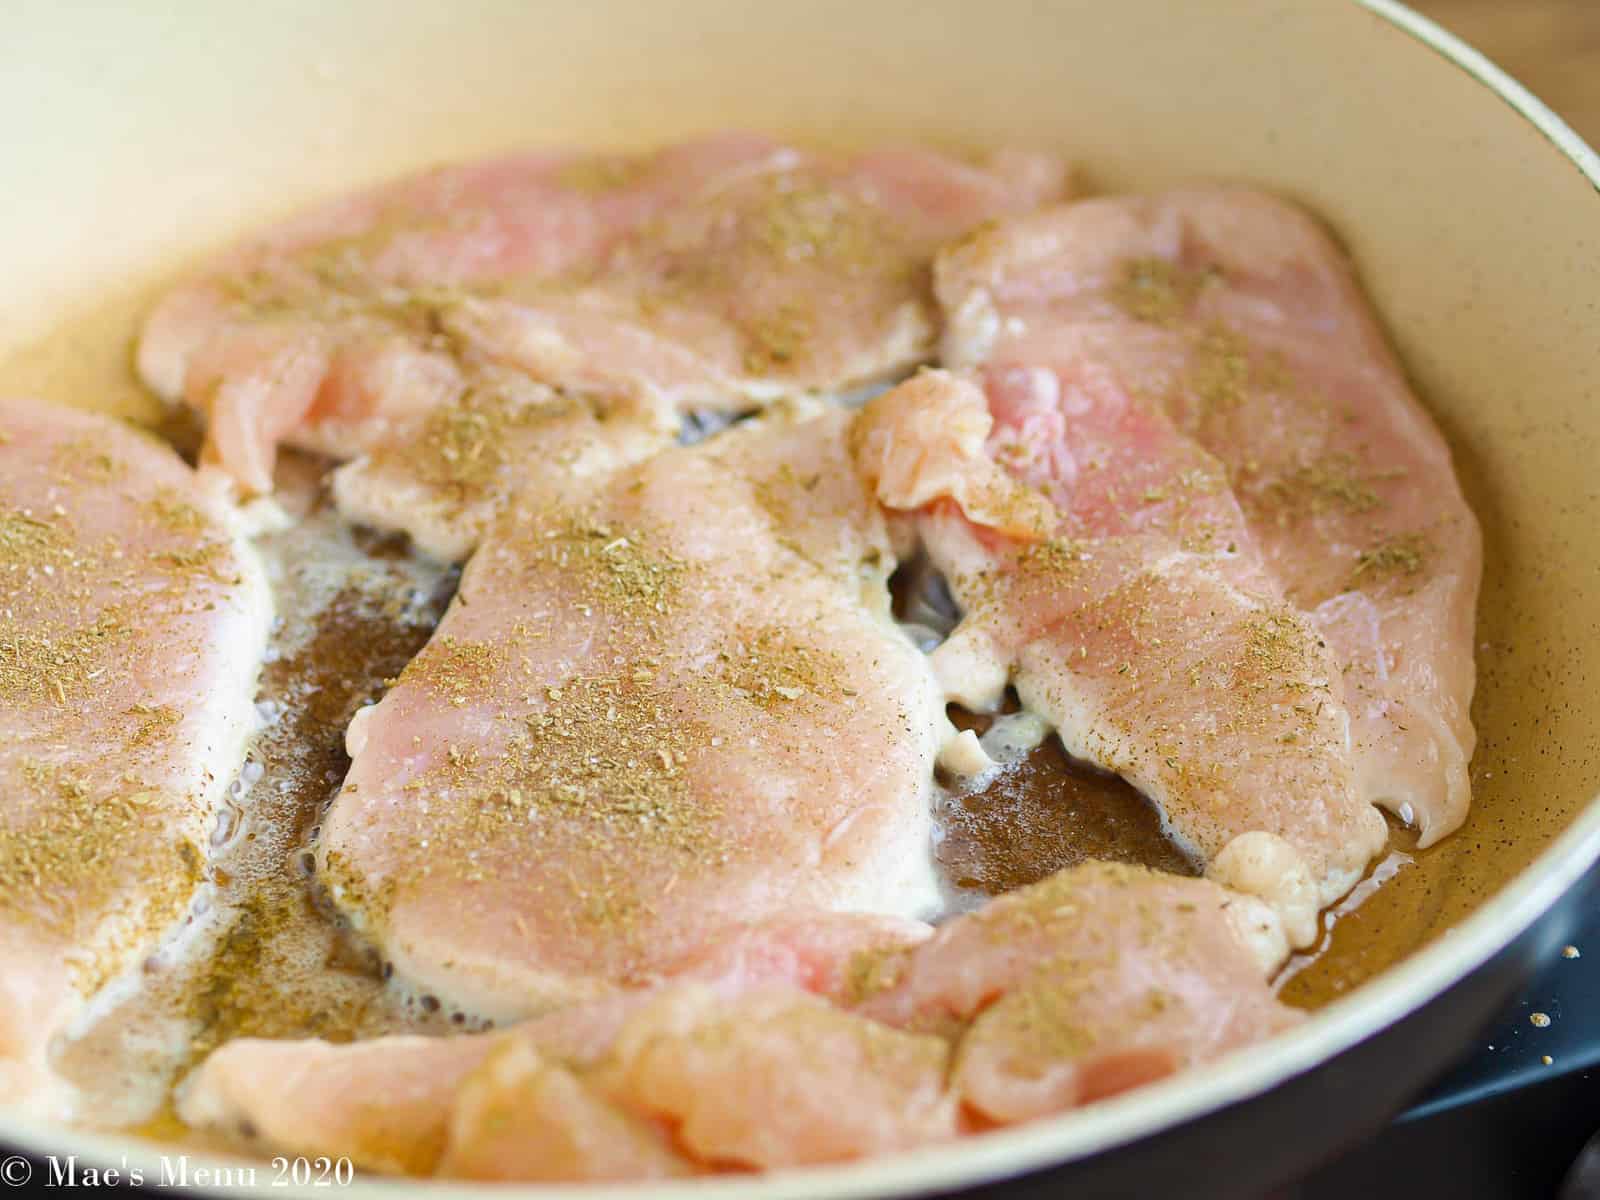 Seasoned chicken in a saute pan